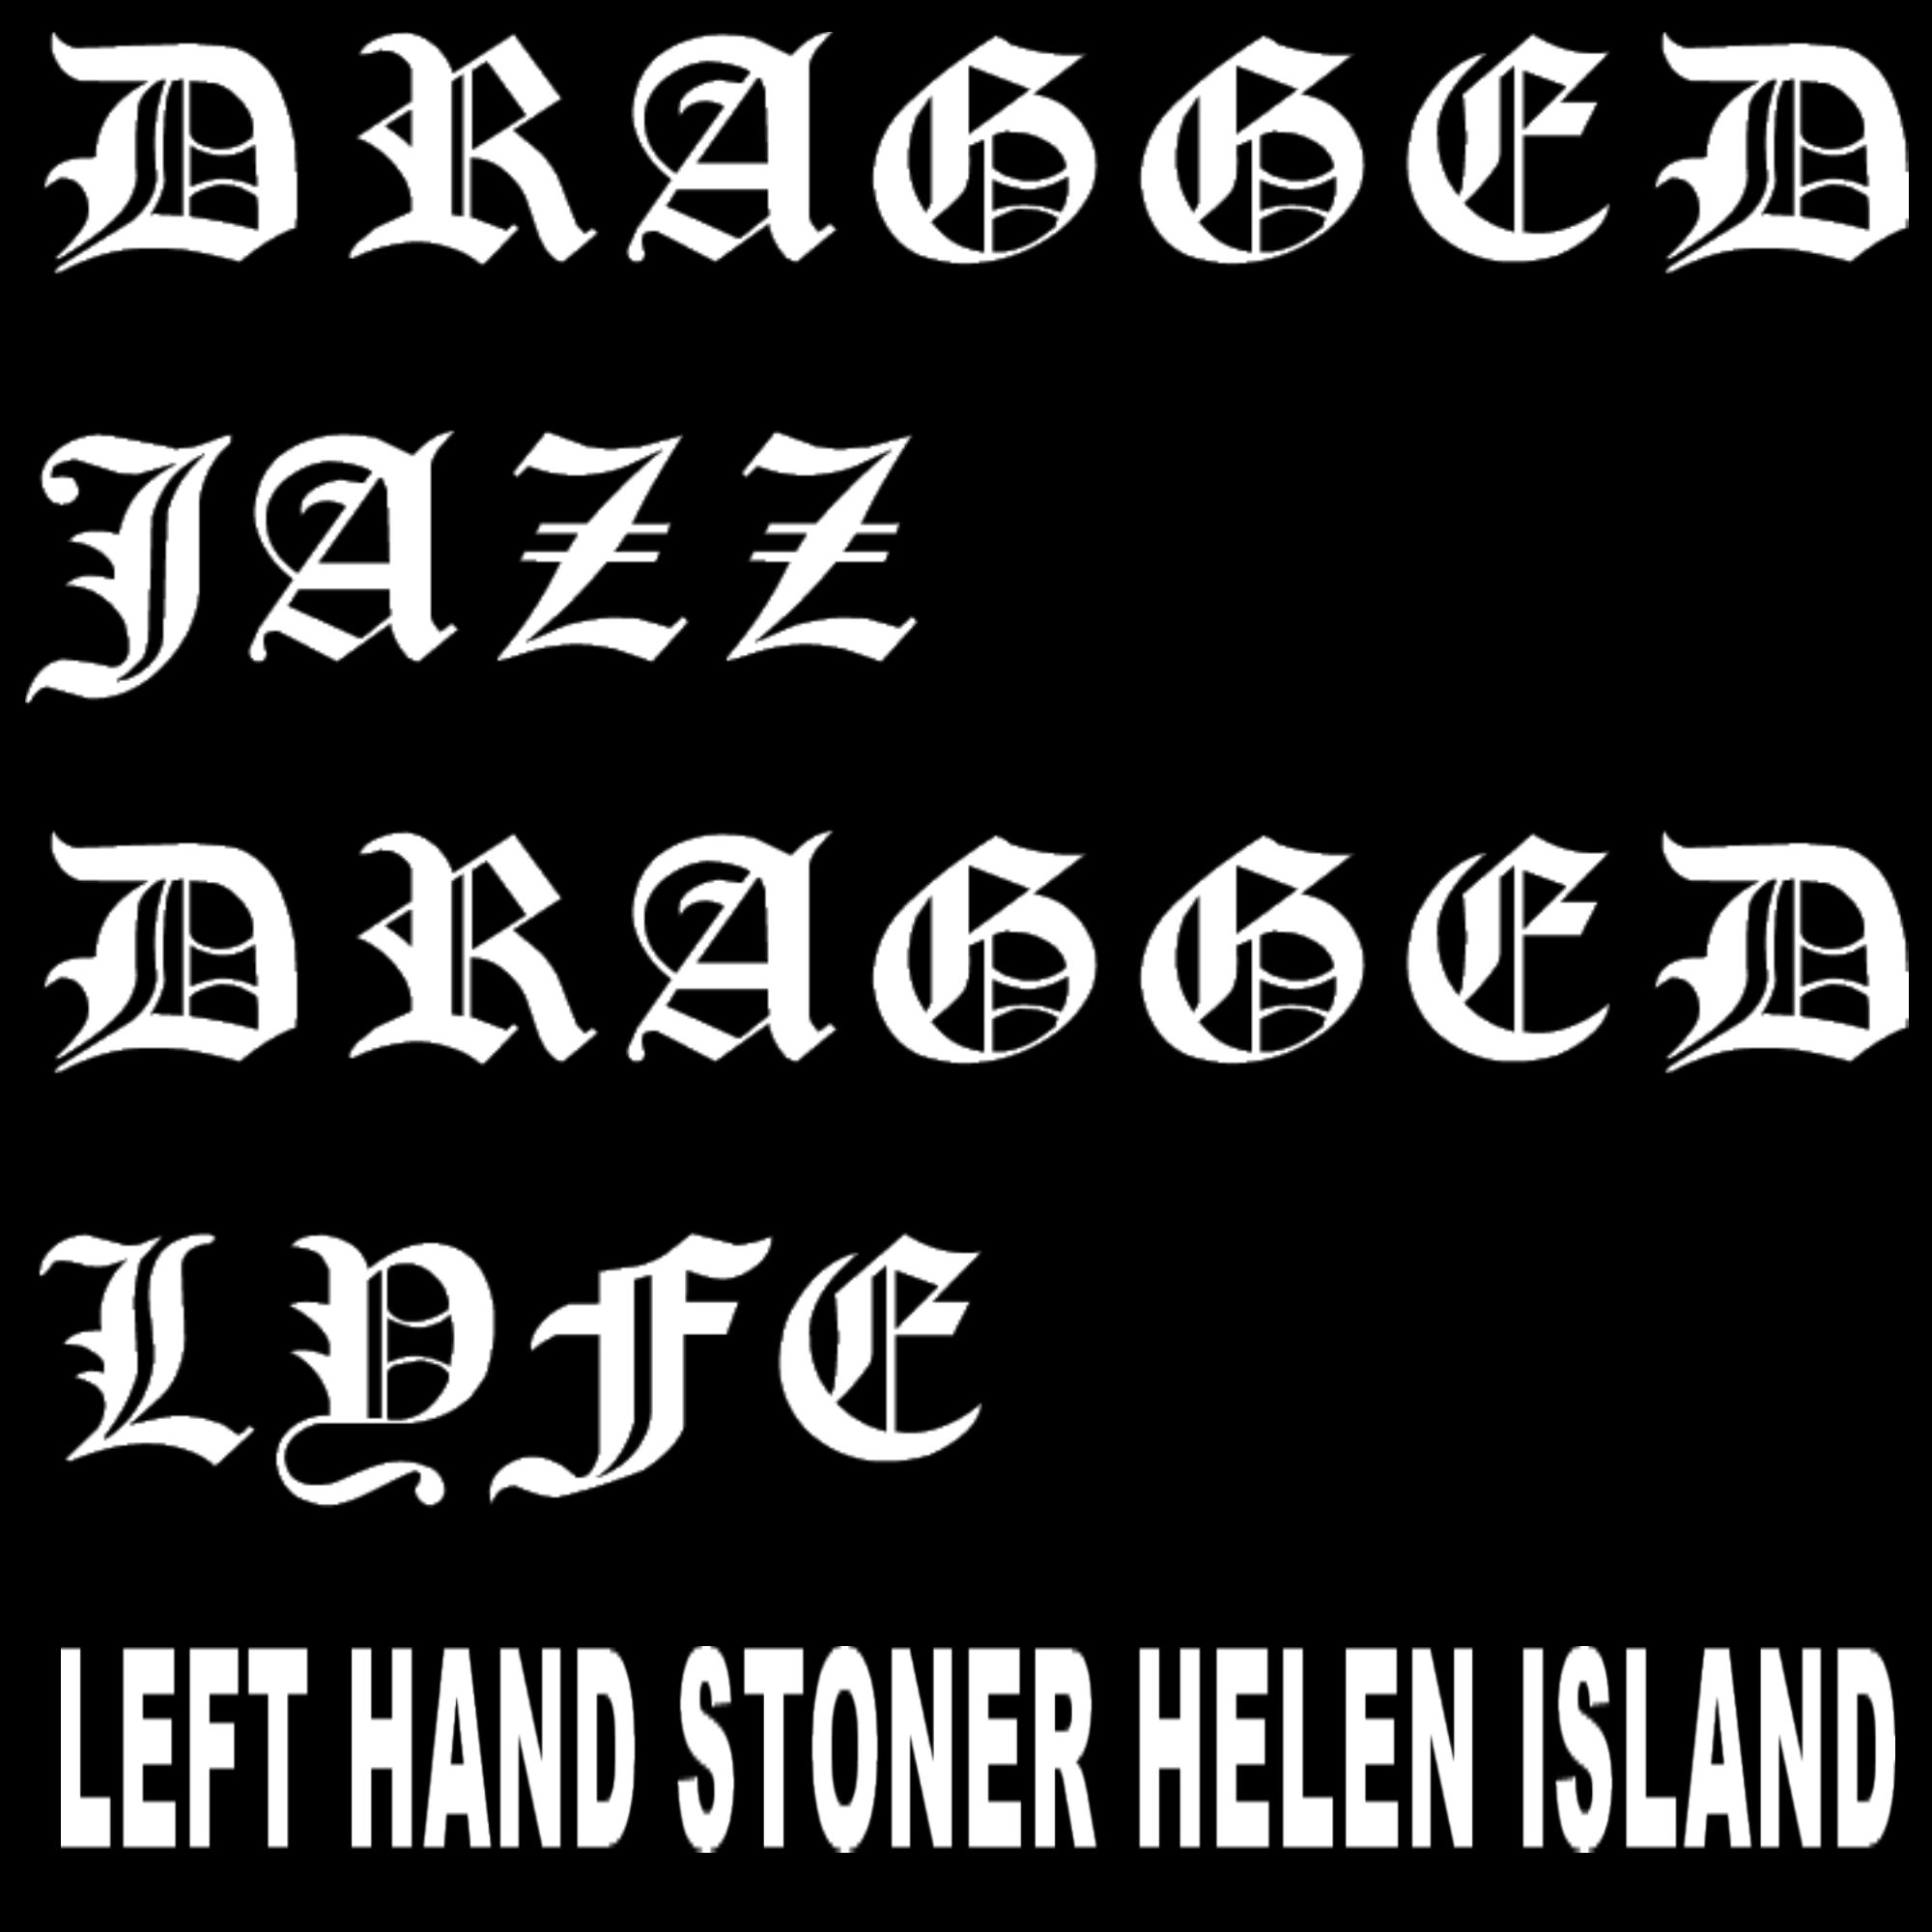 Left Hand Stoner